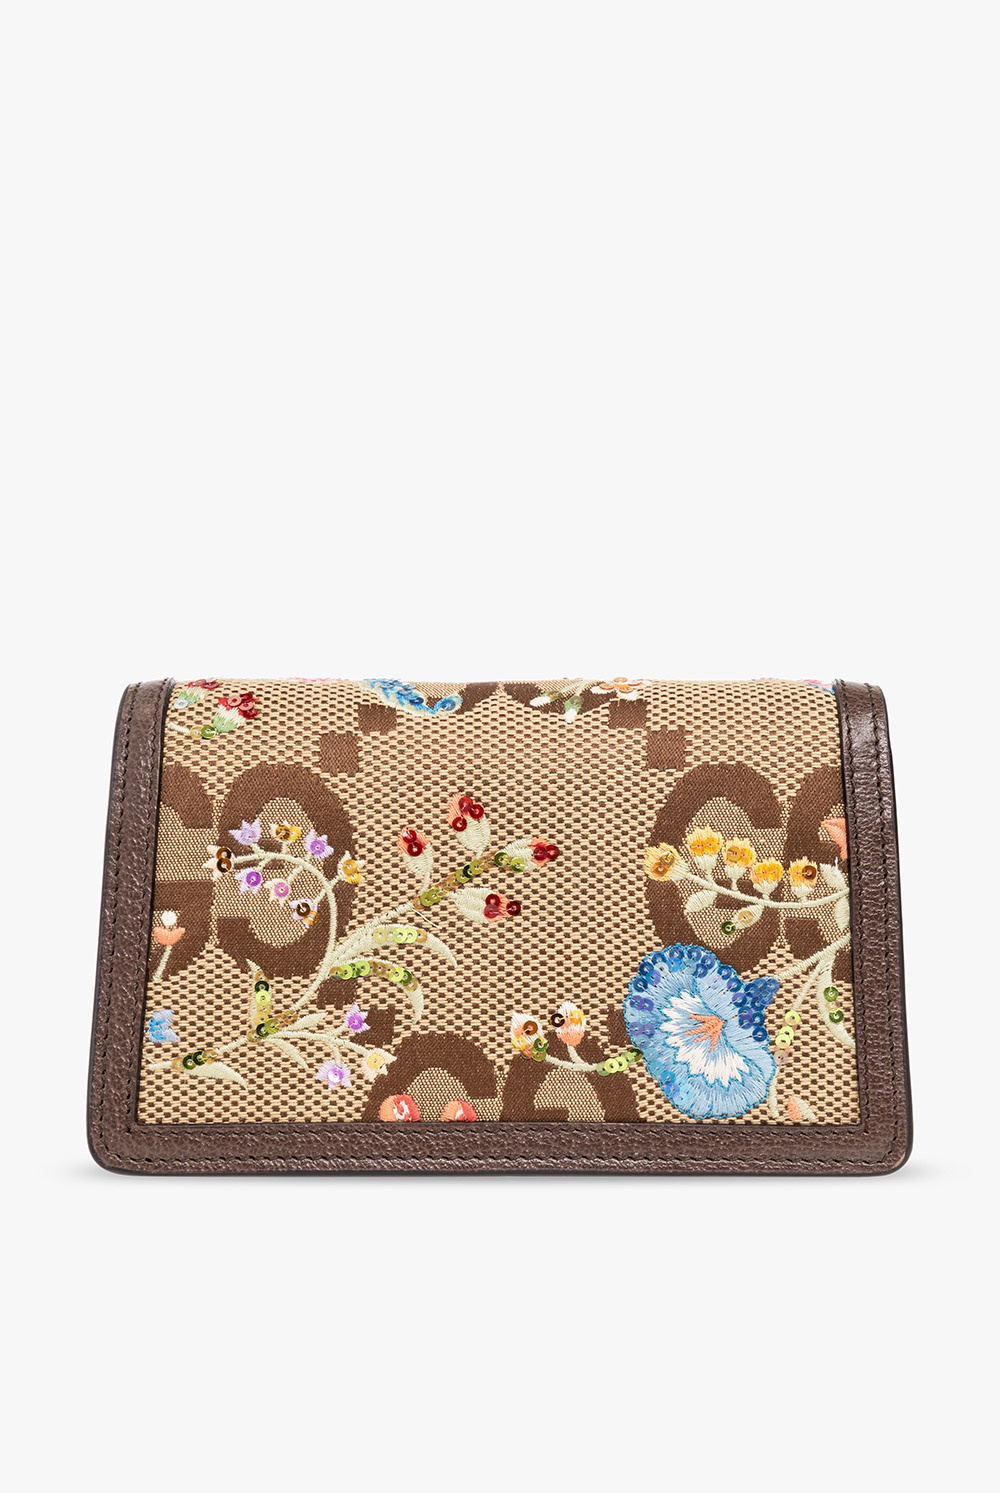 Gucci ‘Dionysus Super Mini’ shoulder bag